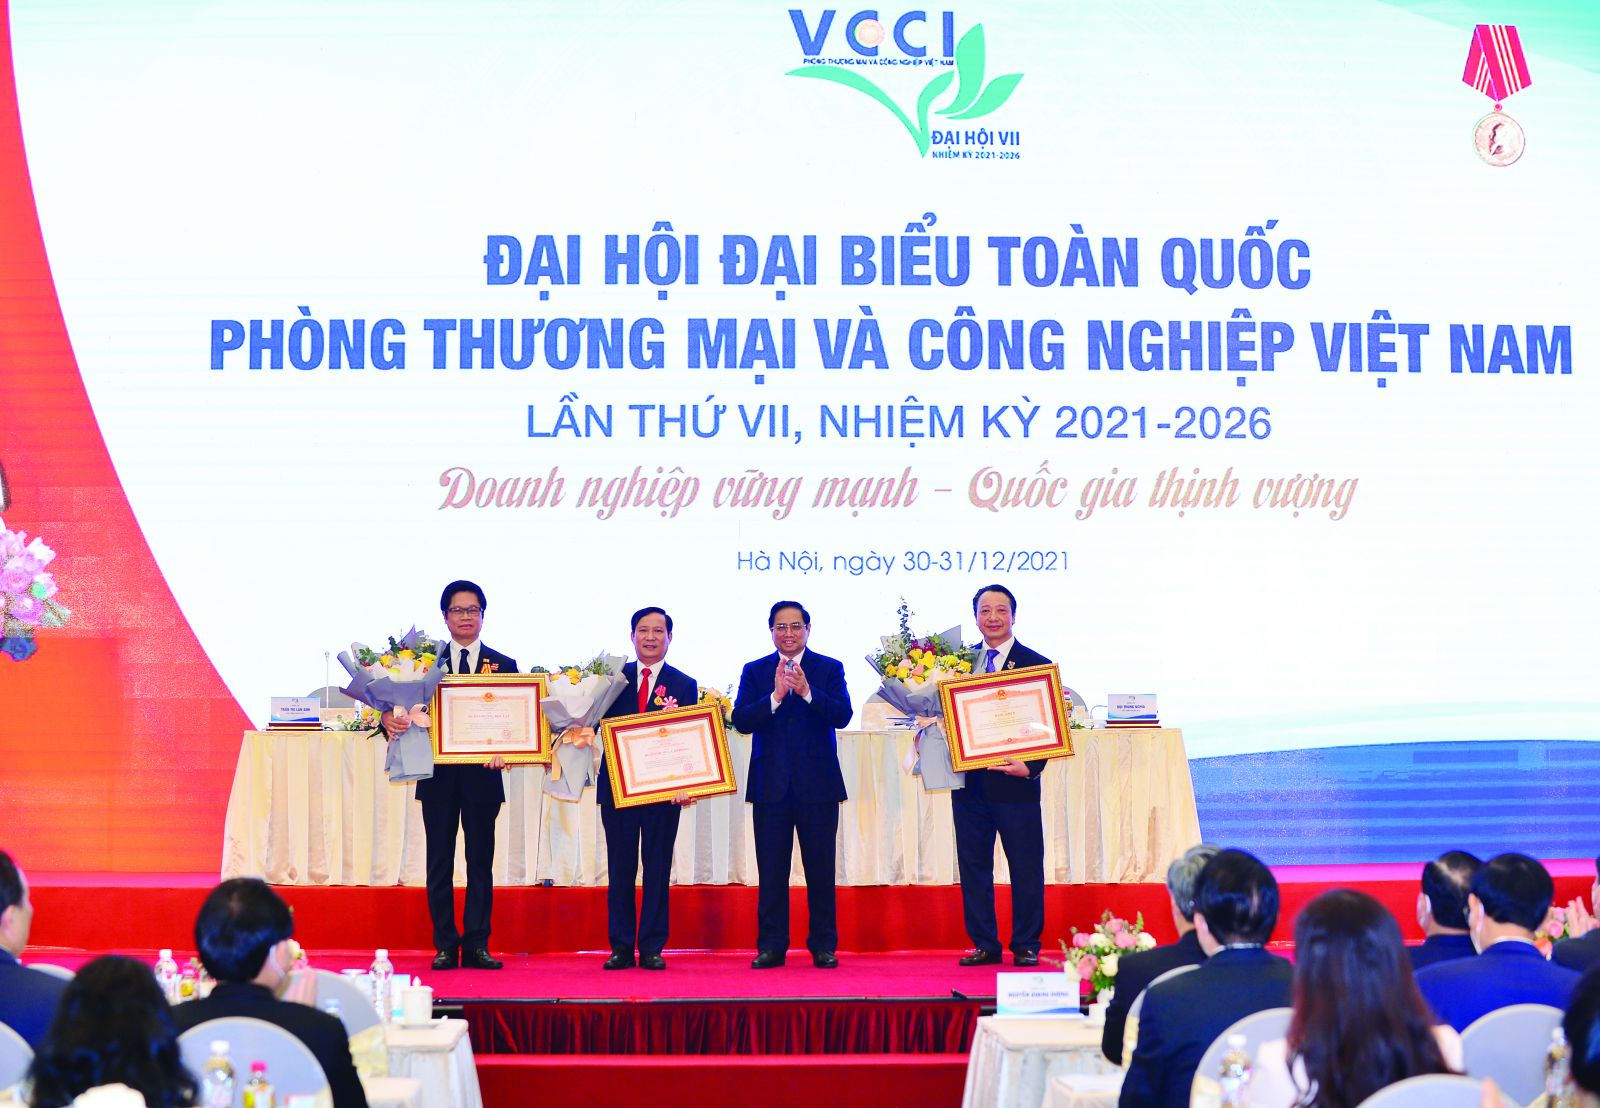 Thủ tướng Chính phủ Phạm Minh Chính trao Huân chương Lao động hạng Nhất, Nhì và Bằng khen cho các đồng chí lãnh đạo VCCI có thành tích xuất sắc.